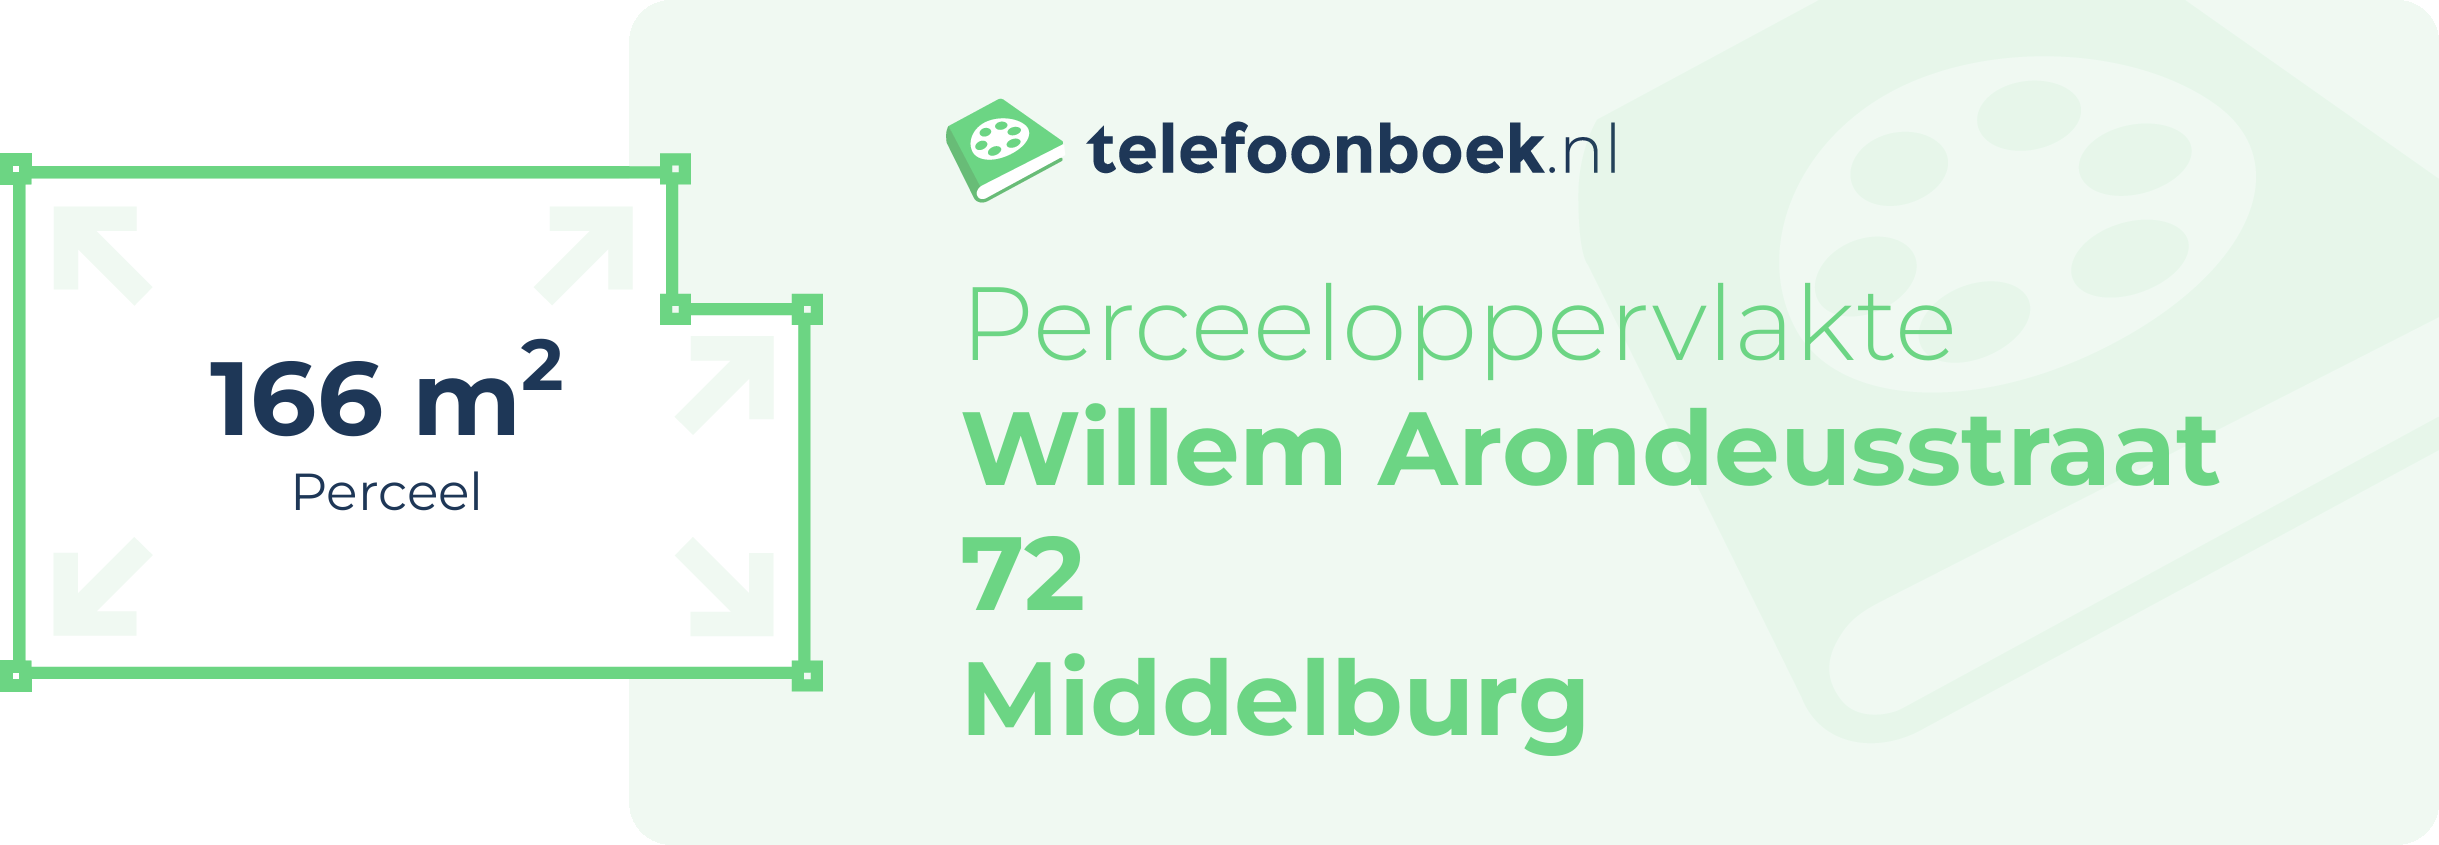 Perceeloppervlakte Willem Arondeusstraat 72 Middelburg